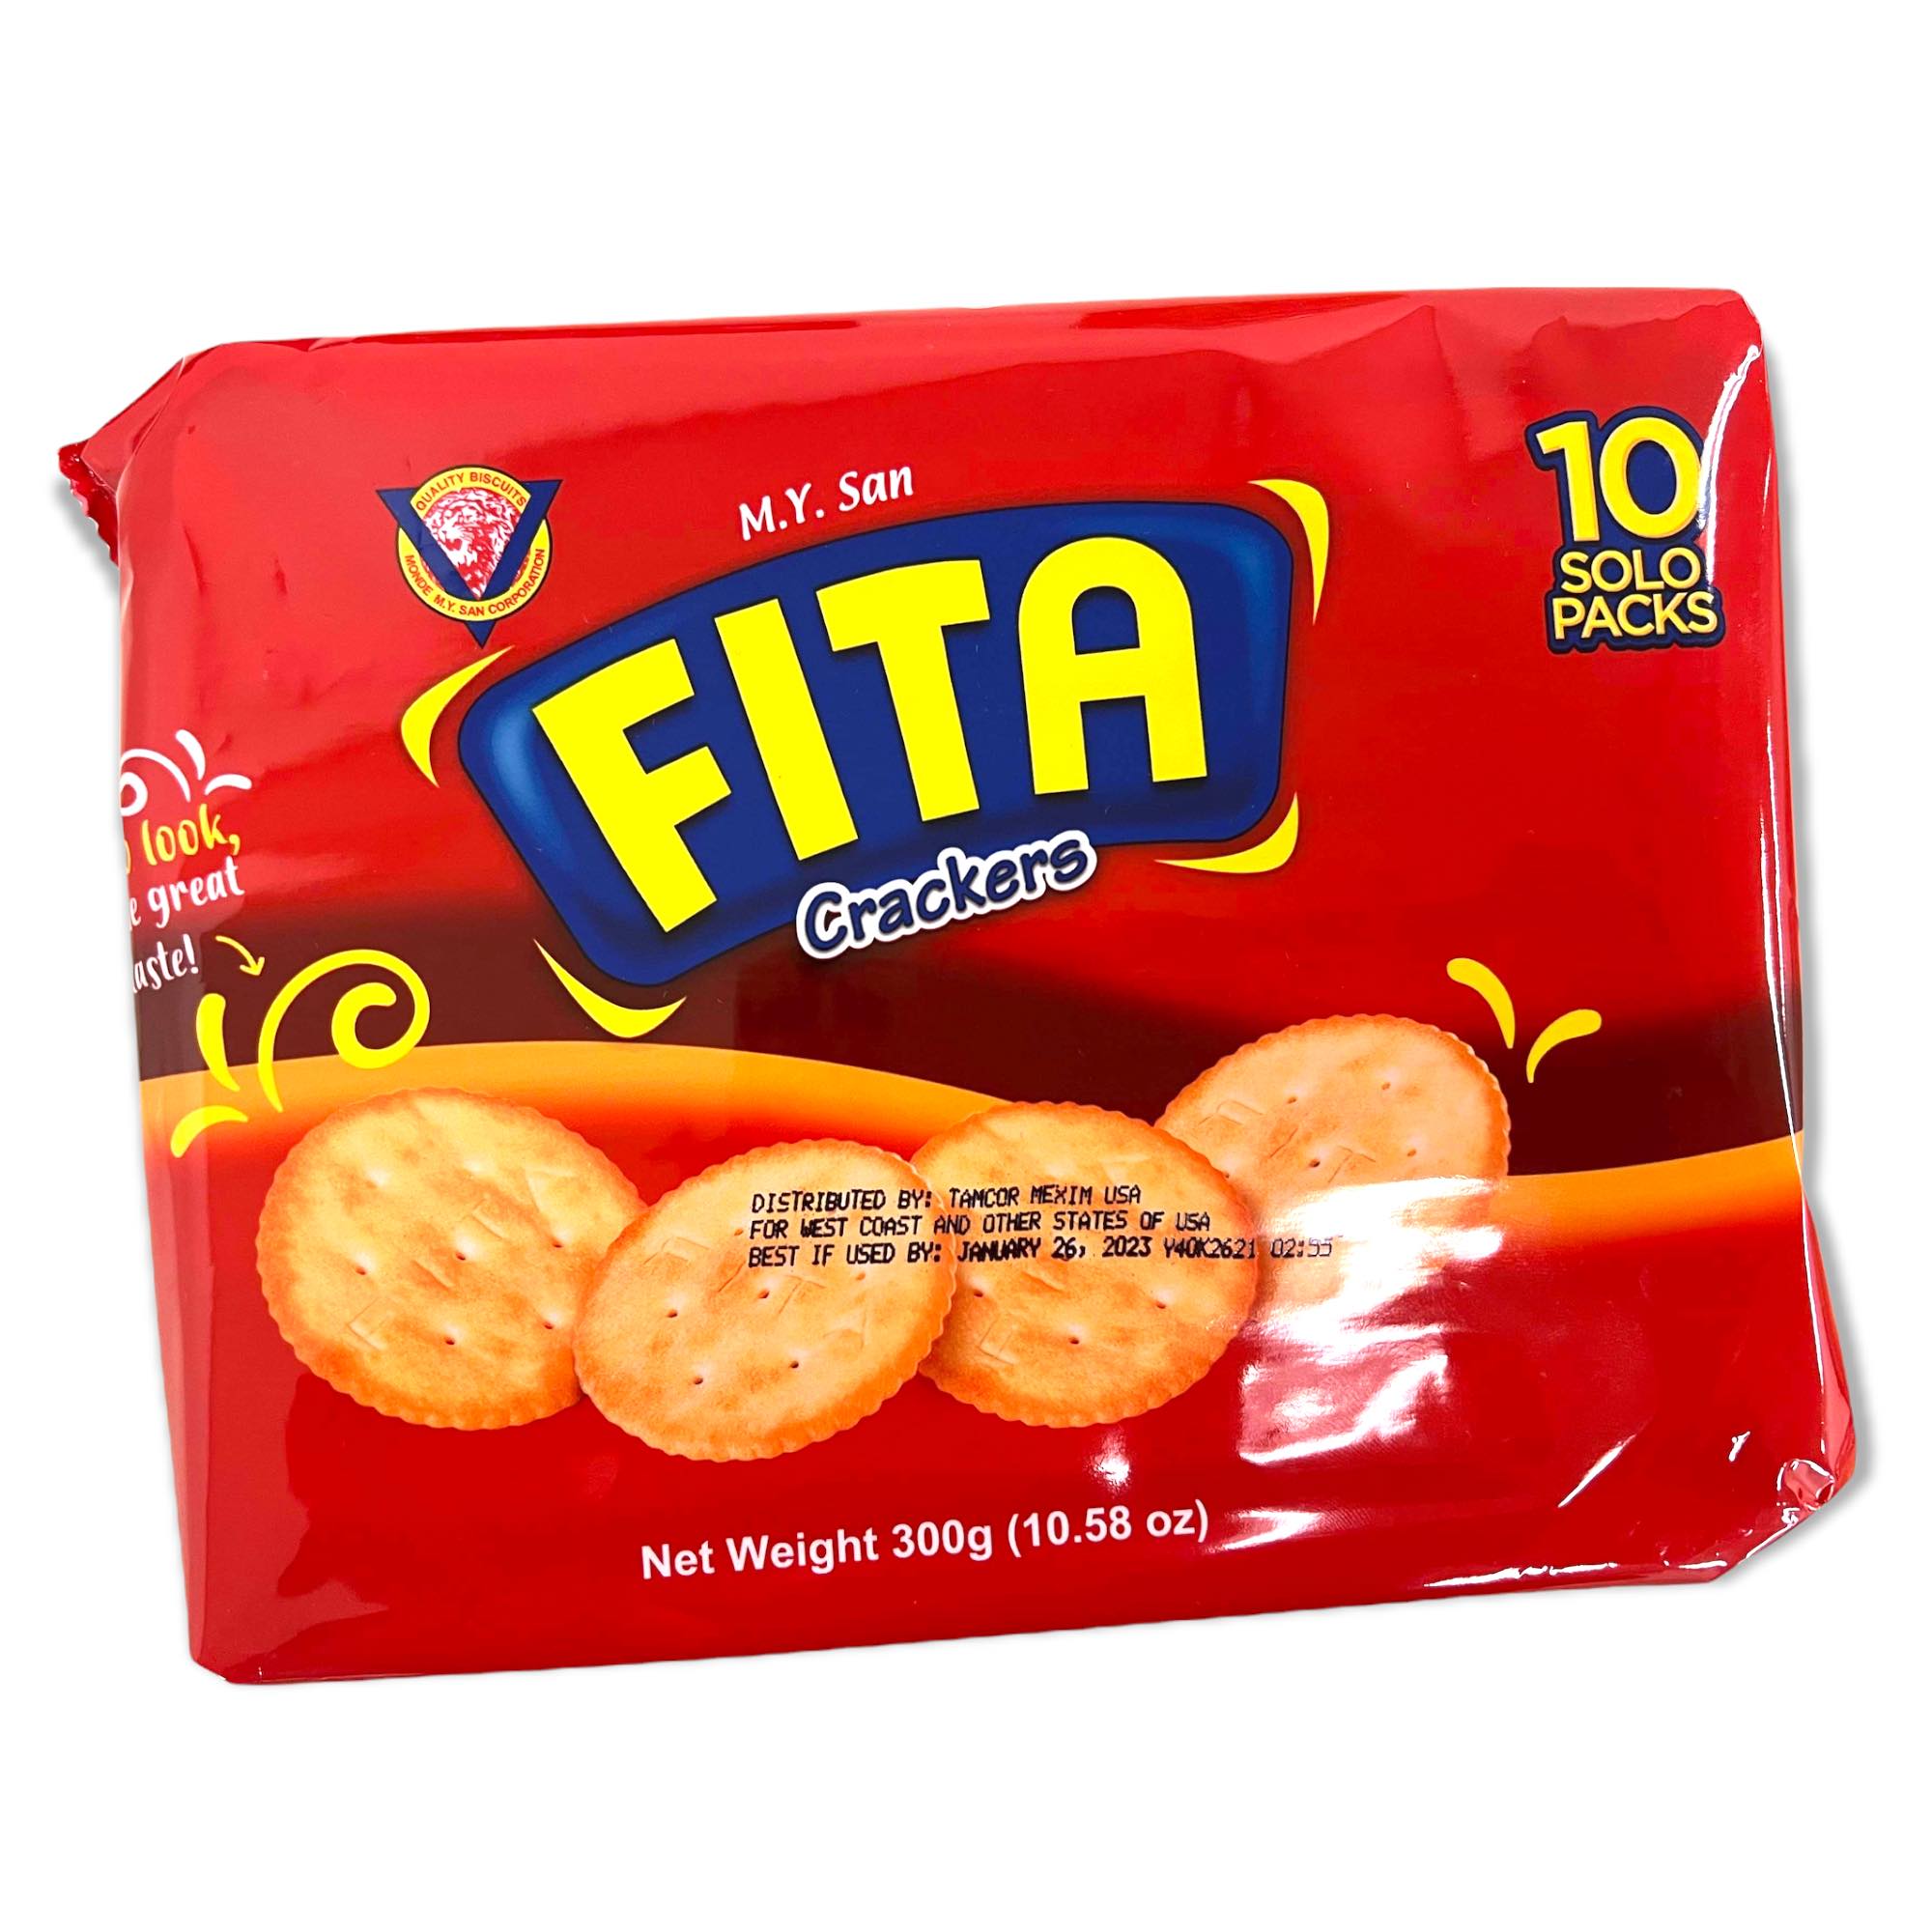 M.Y. San - Fita Crackers - Original - 10 Packs - 300 G